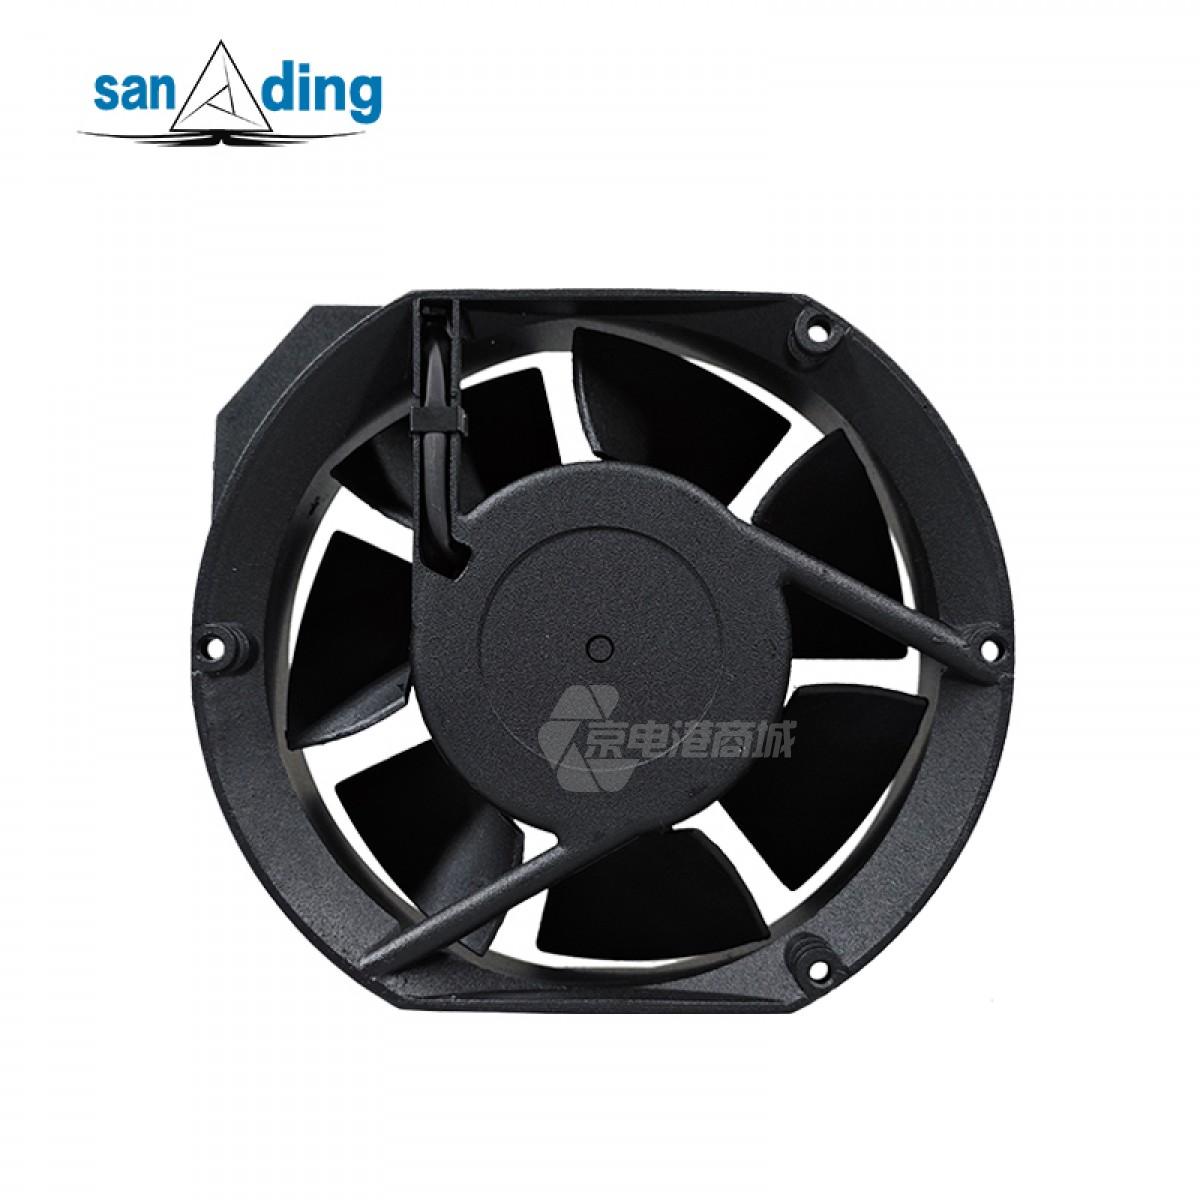 sanding A5920C-23T-B21 220V 0.13A 28W 2900rpm 172×150×51mm Plastic frame plastic leaf AC fan